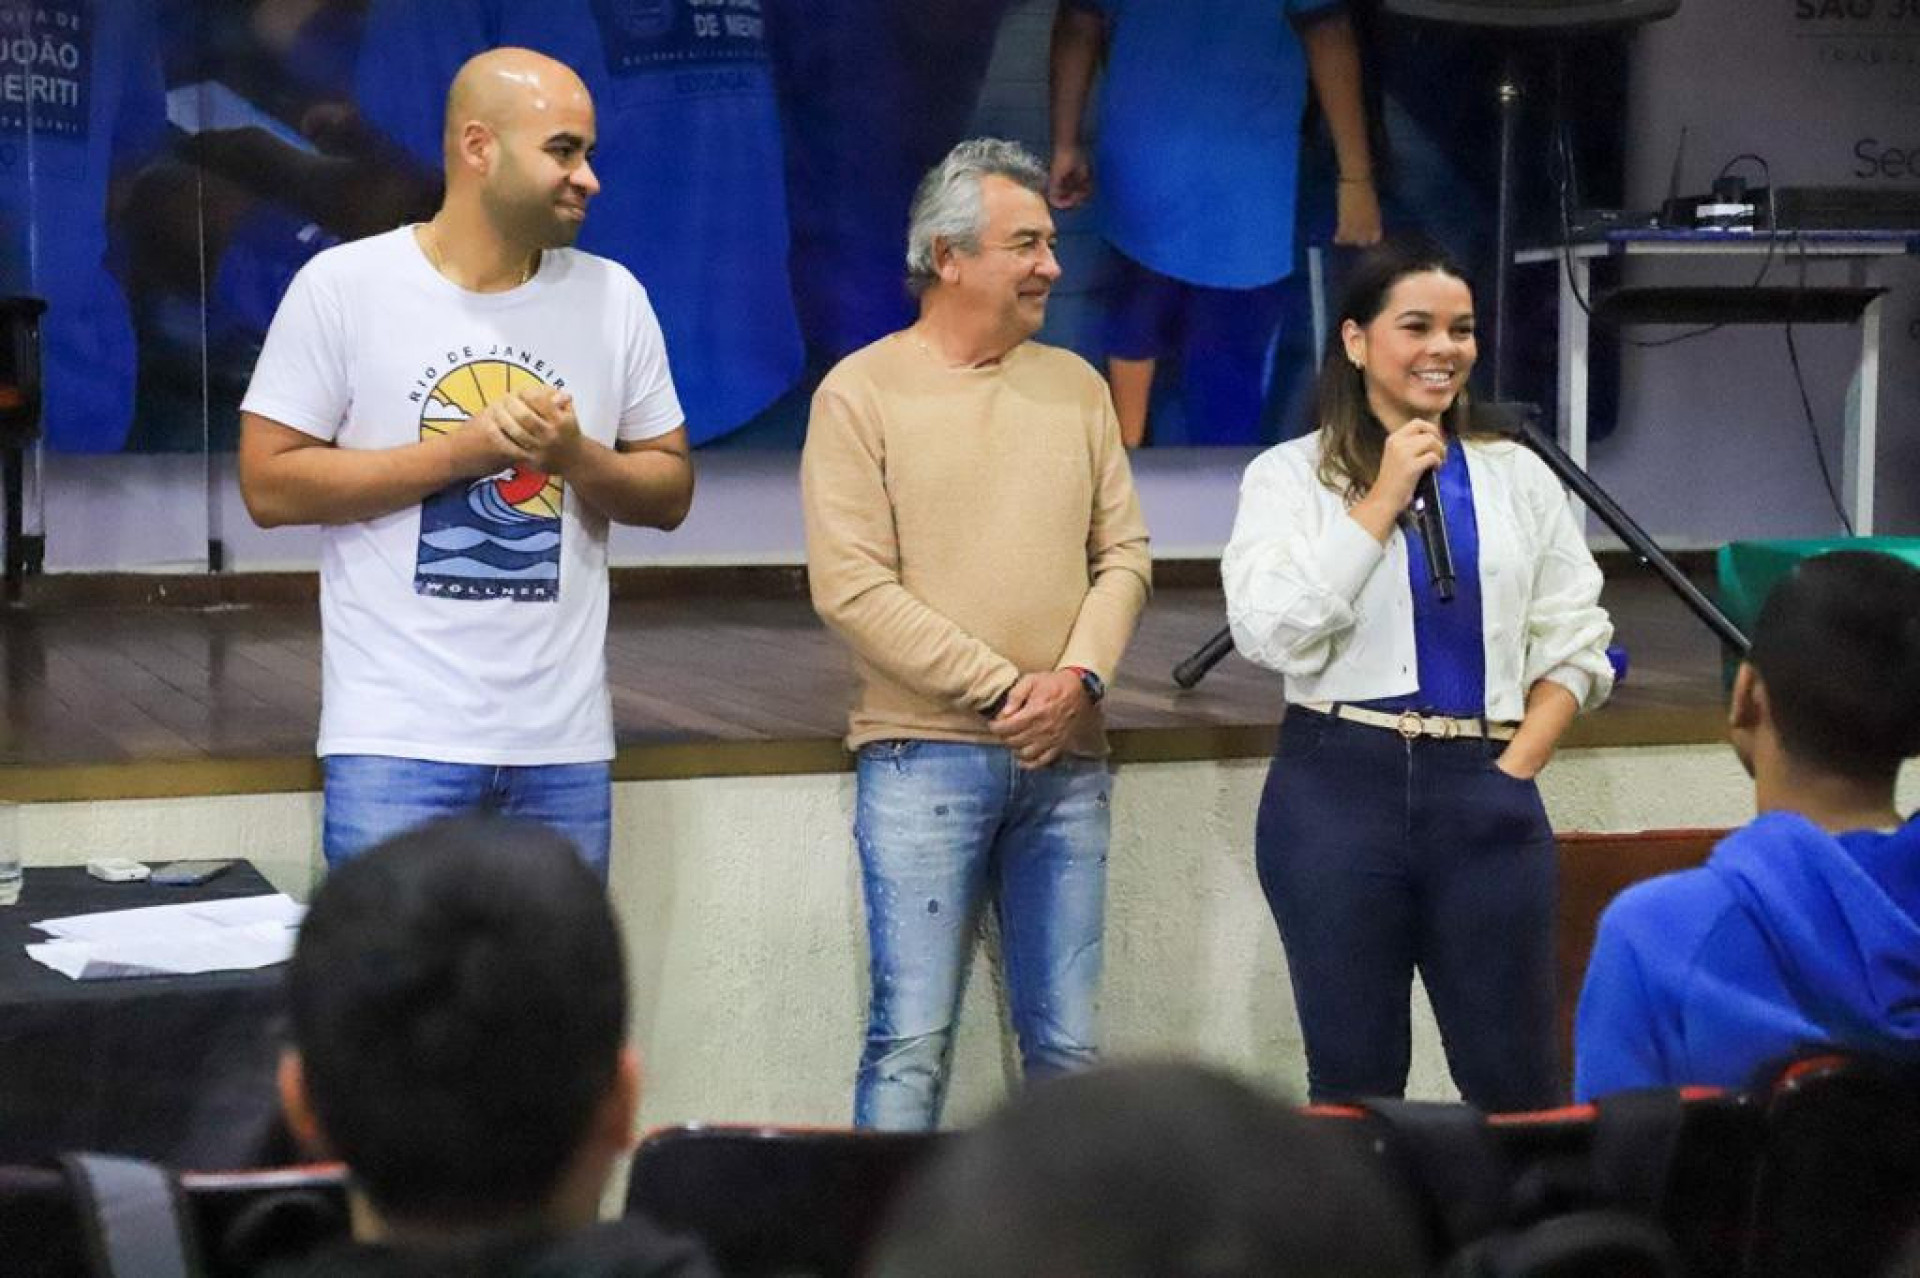 Curso gratuito prepara moradores de Meriti para concurso da Polícia Militar   - Divulgação